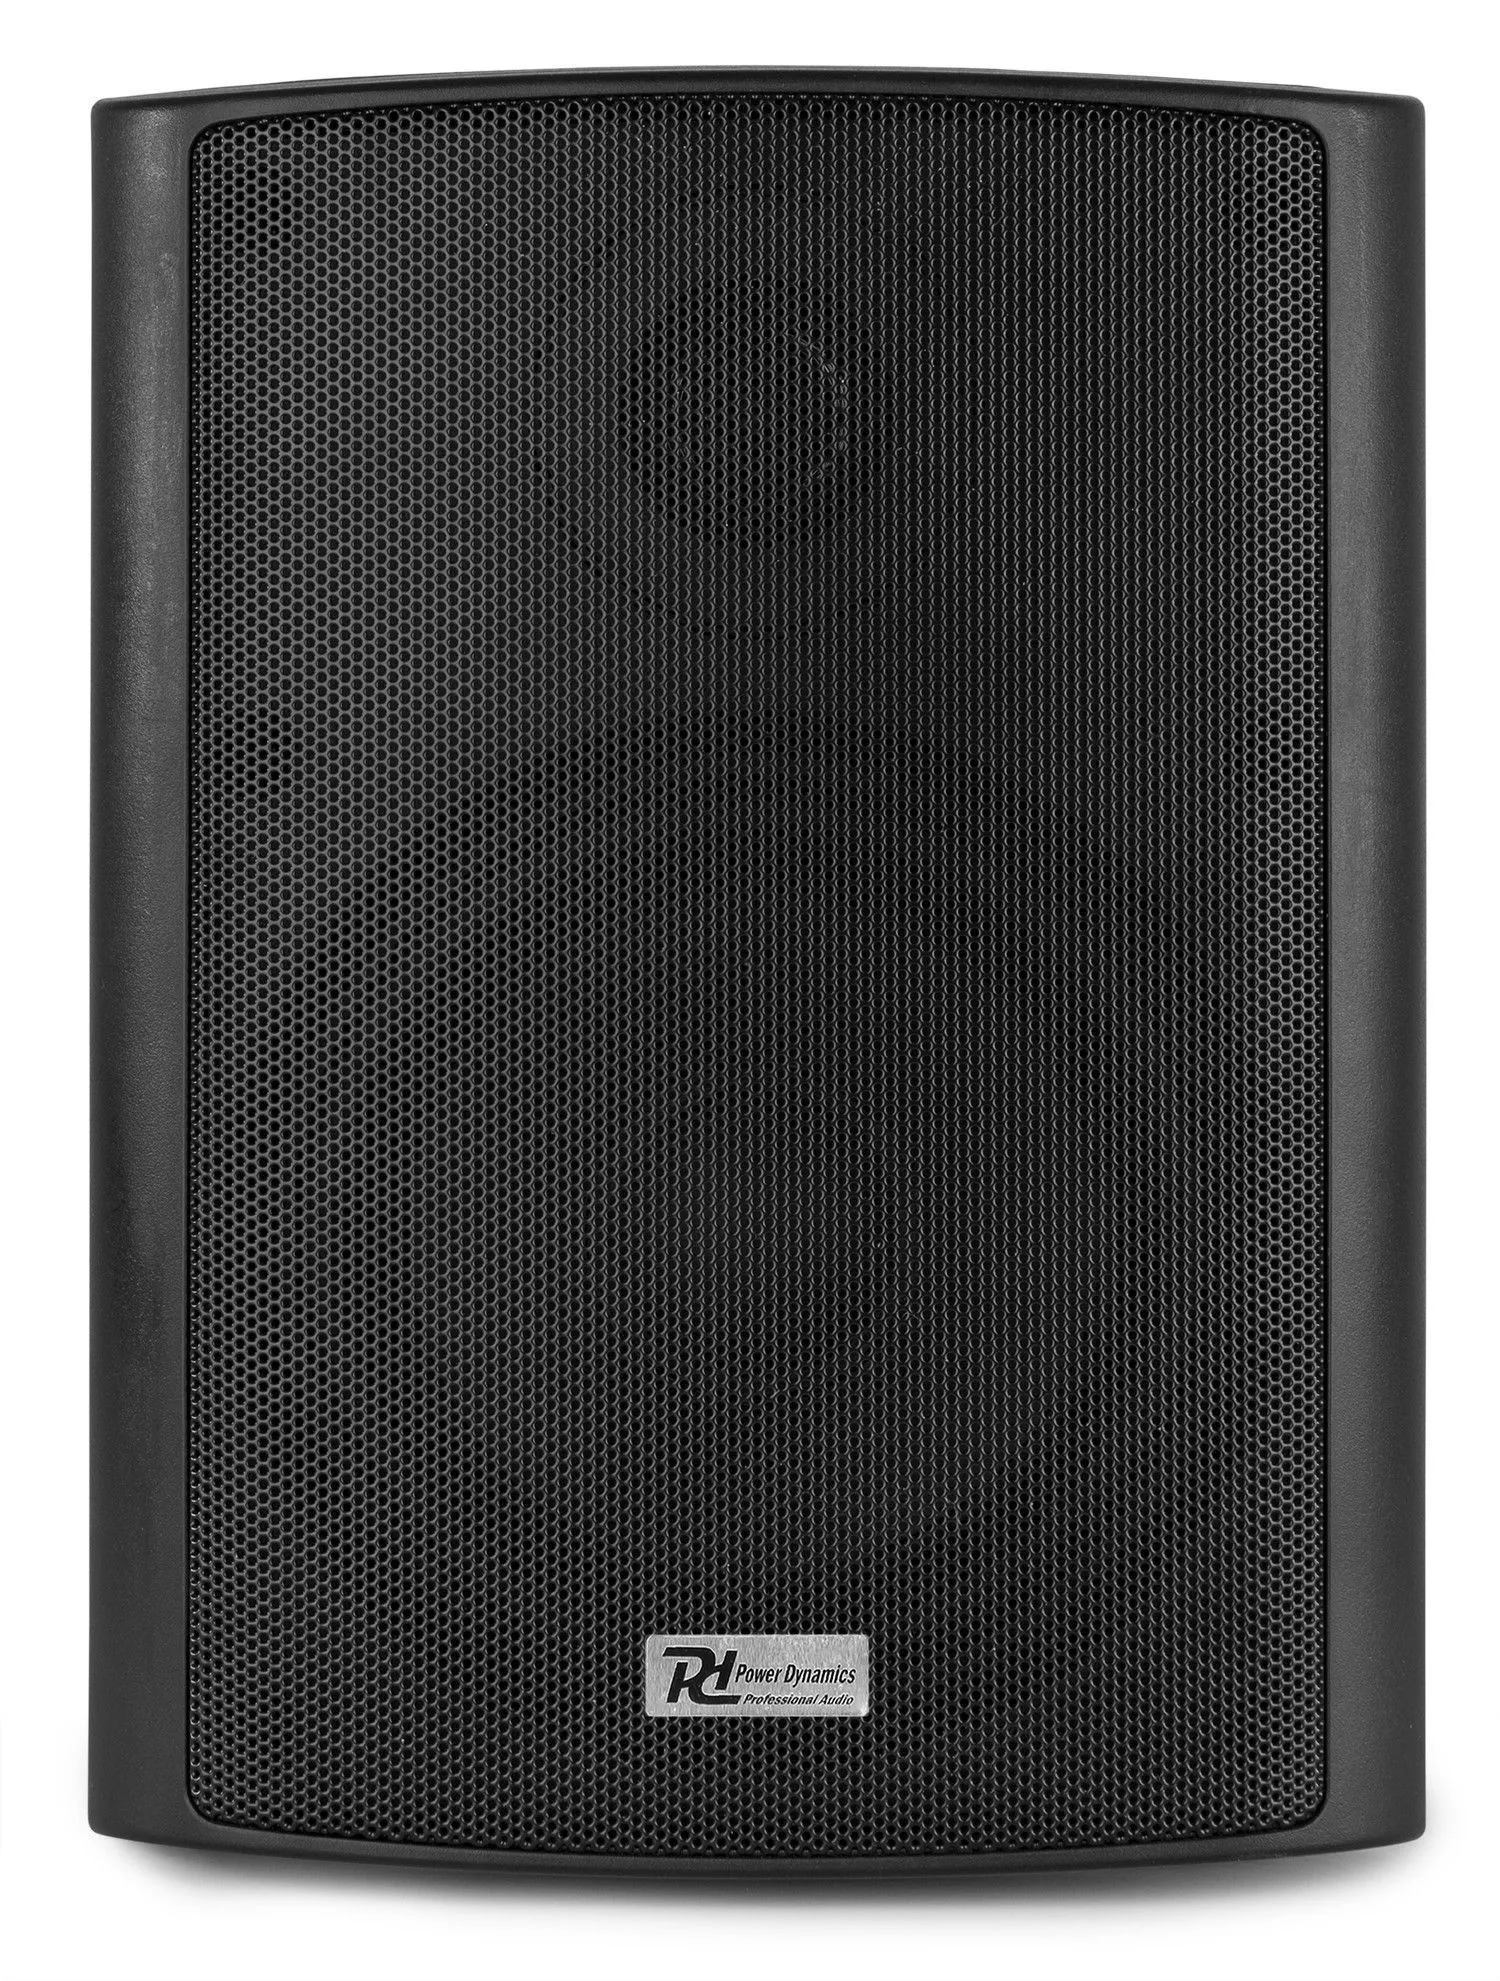 Zwart retourdeals installatie speakers